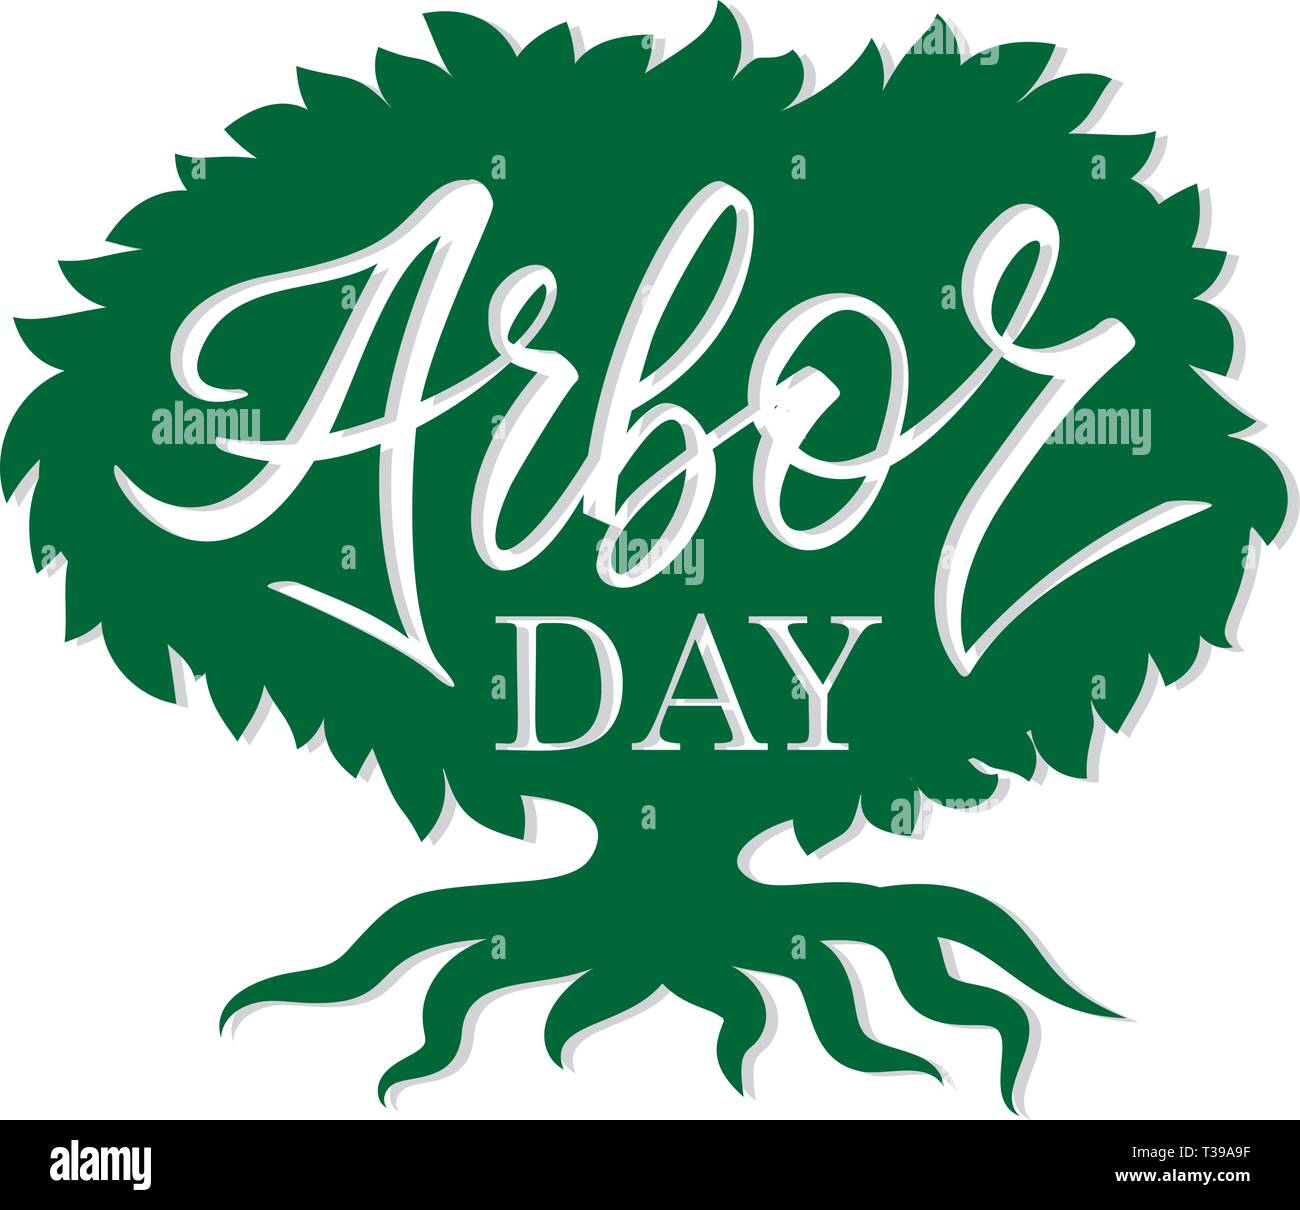 'Arbor Day' mots dans un arbre. L'écriture, lettrage, typographie, calligraphie. Une couleur vert foncé, gris clair avec l'ombre. Pour poster, bannière, carte. Illustration de Vecteur